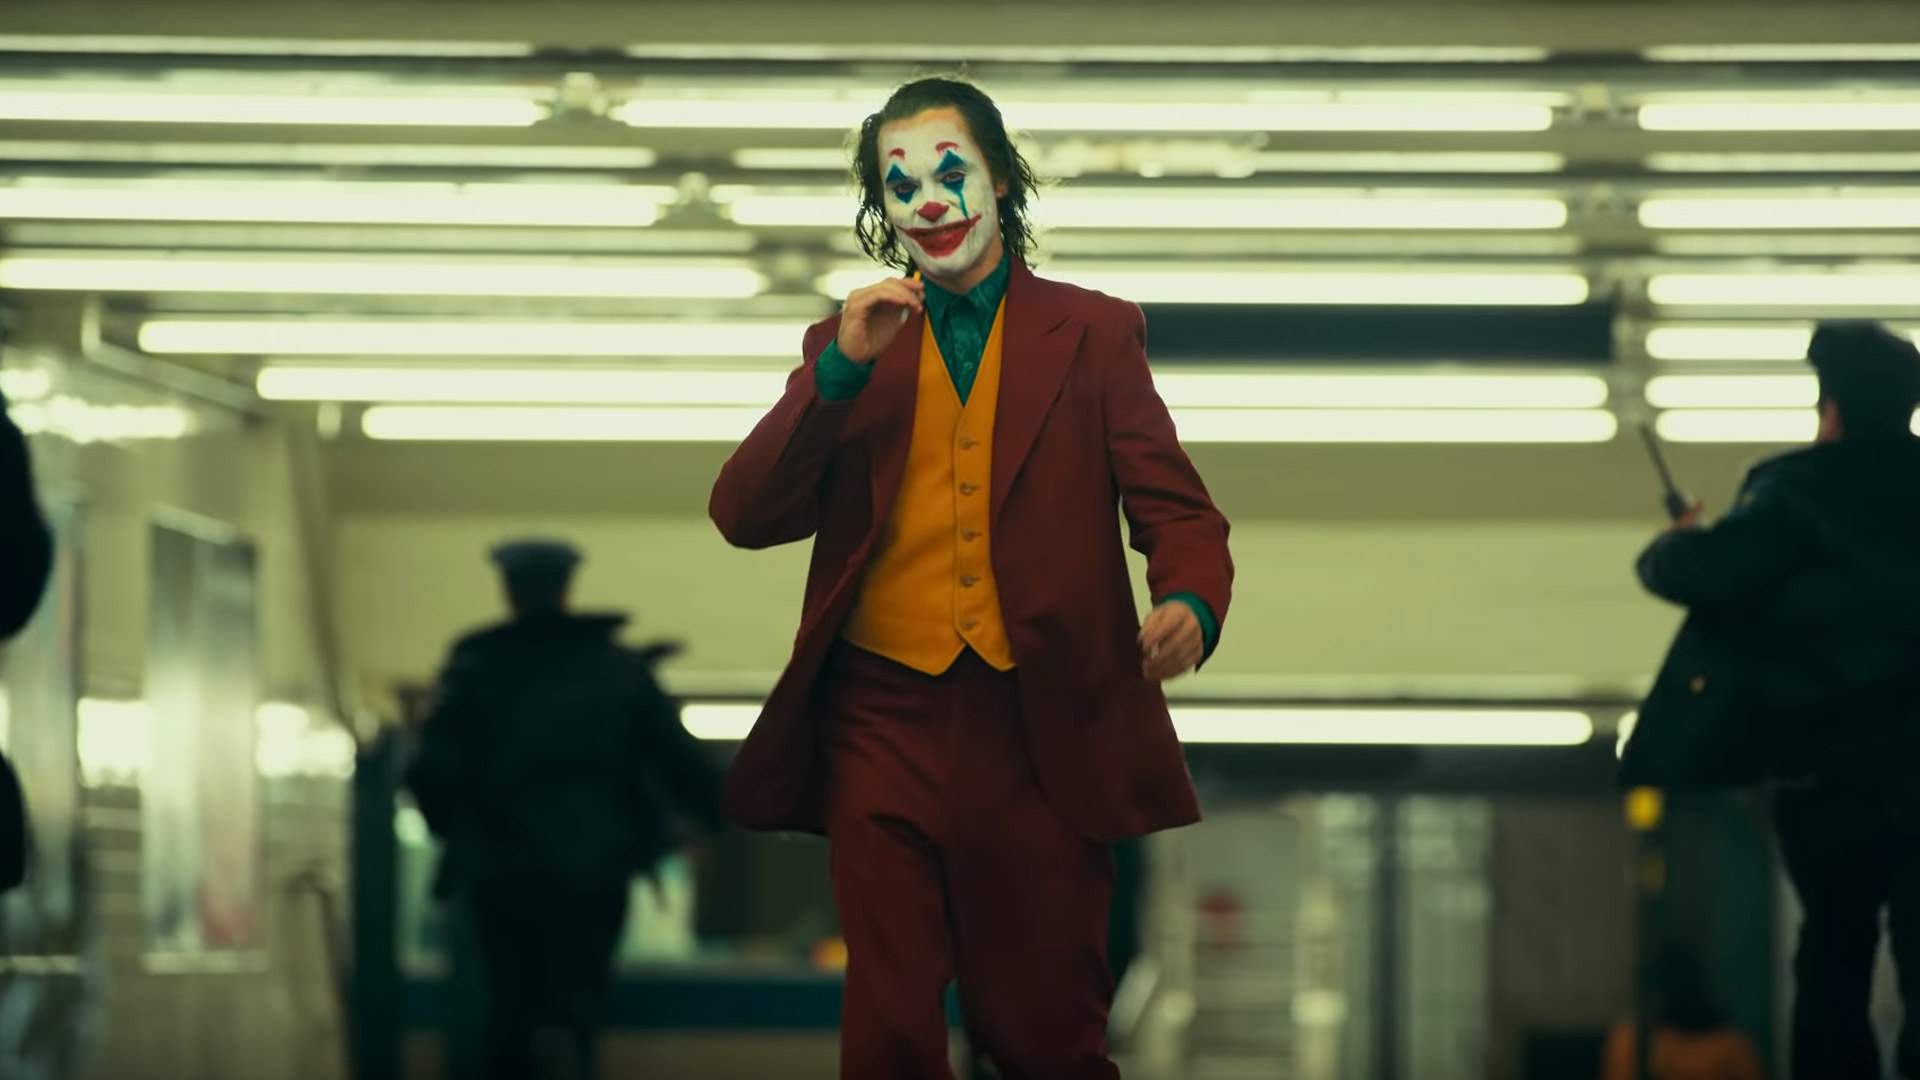 Joker 2019 Walking - HD Wallpaper 